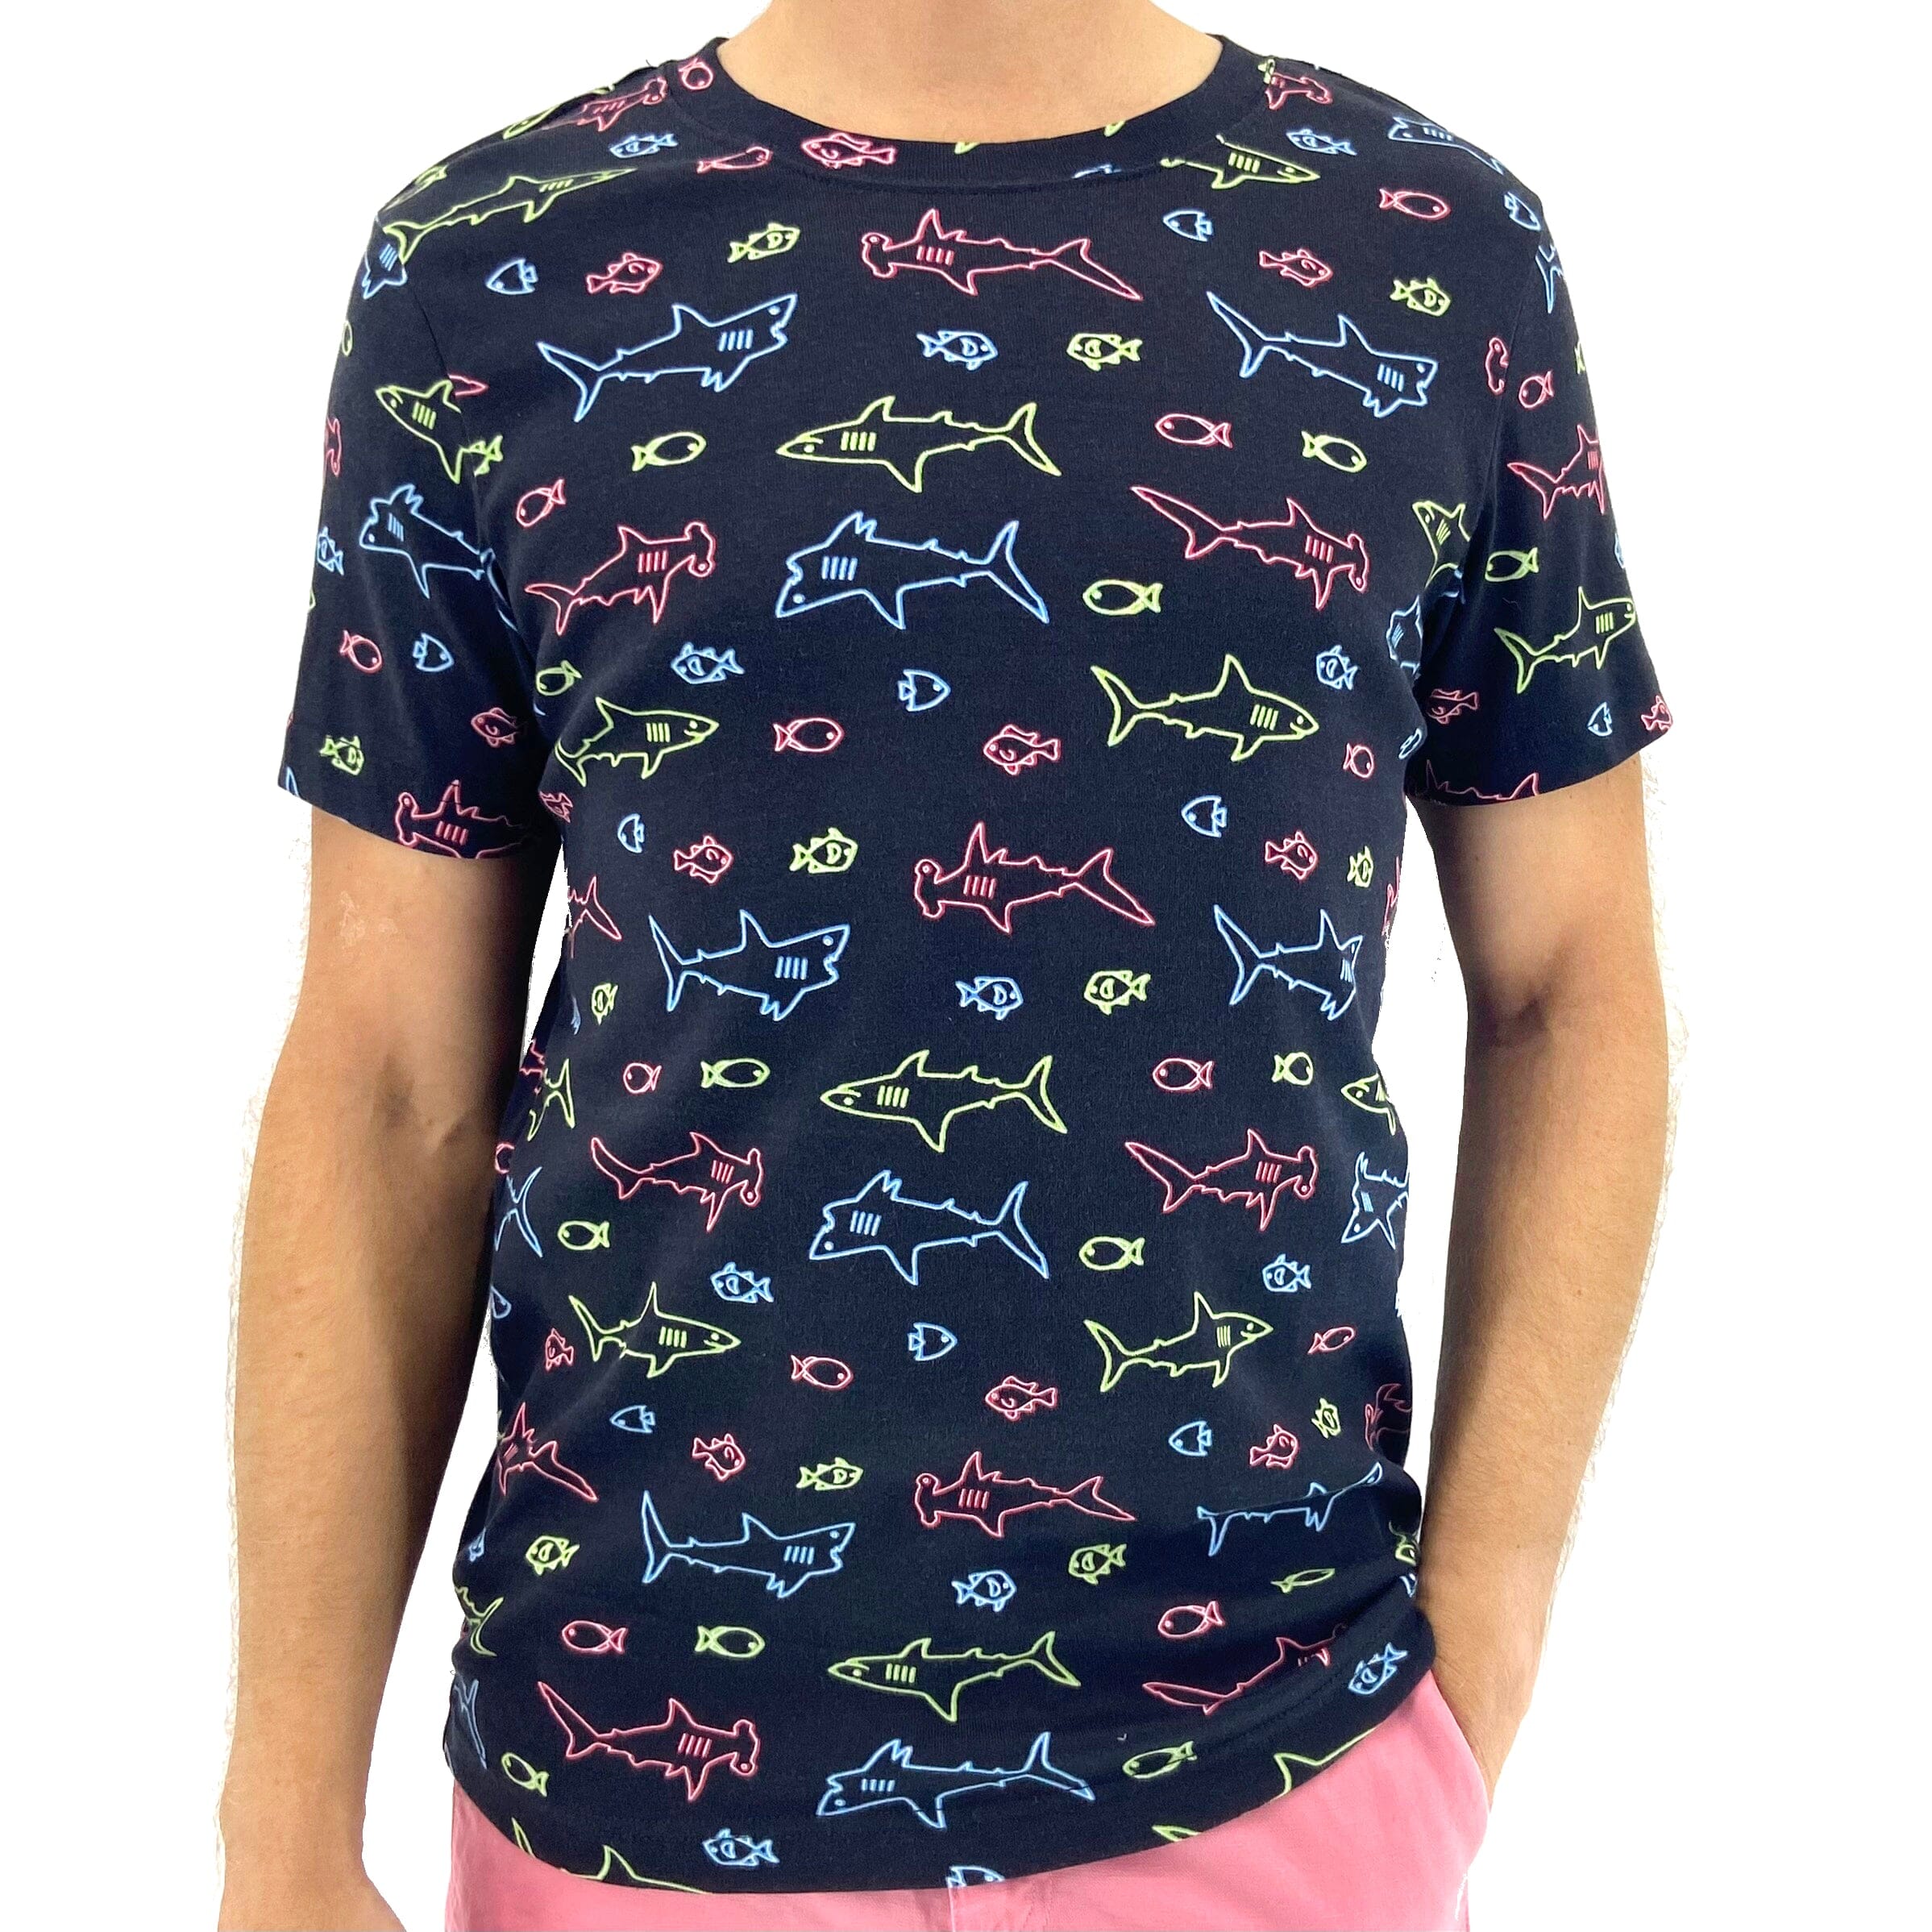 https://www.rockatoll.com/cdn/shop/files/neon-shark-patterned-novelty-cotton-tee-menswear.jpg?v=1699606659&width=2397